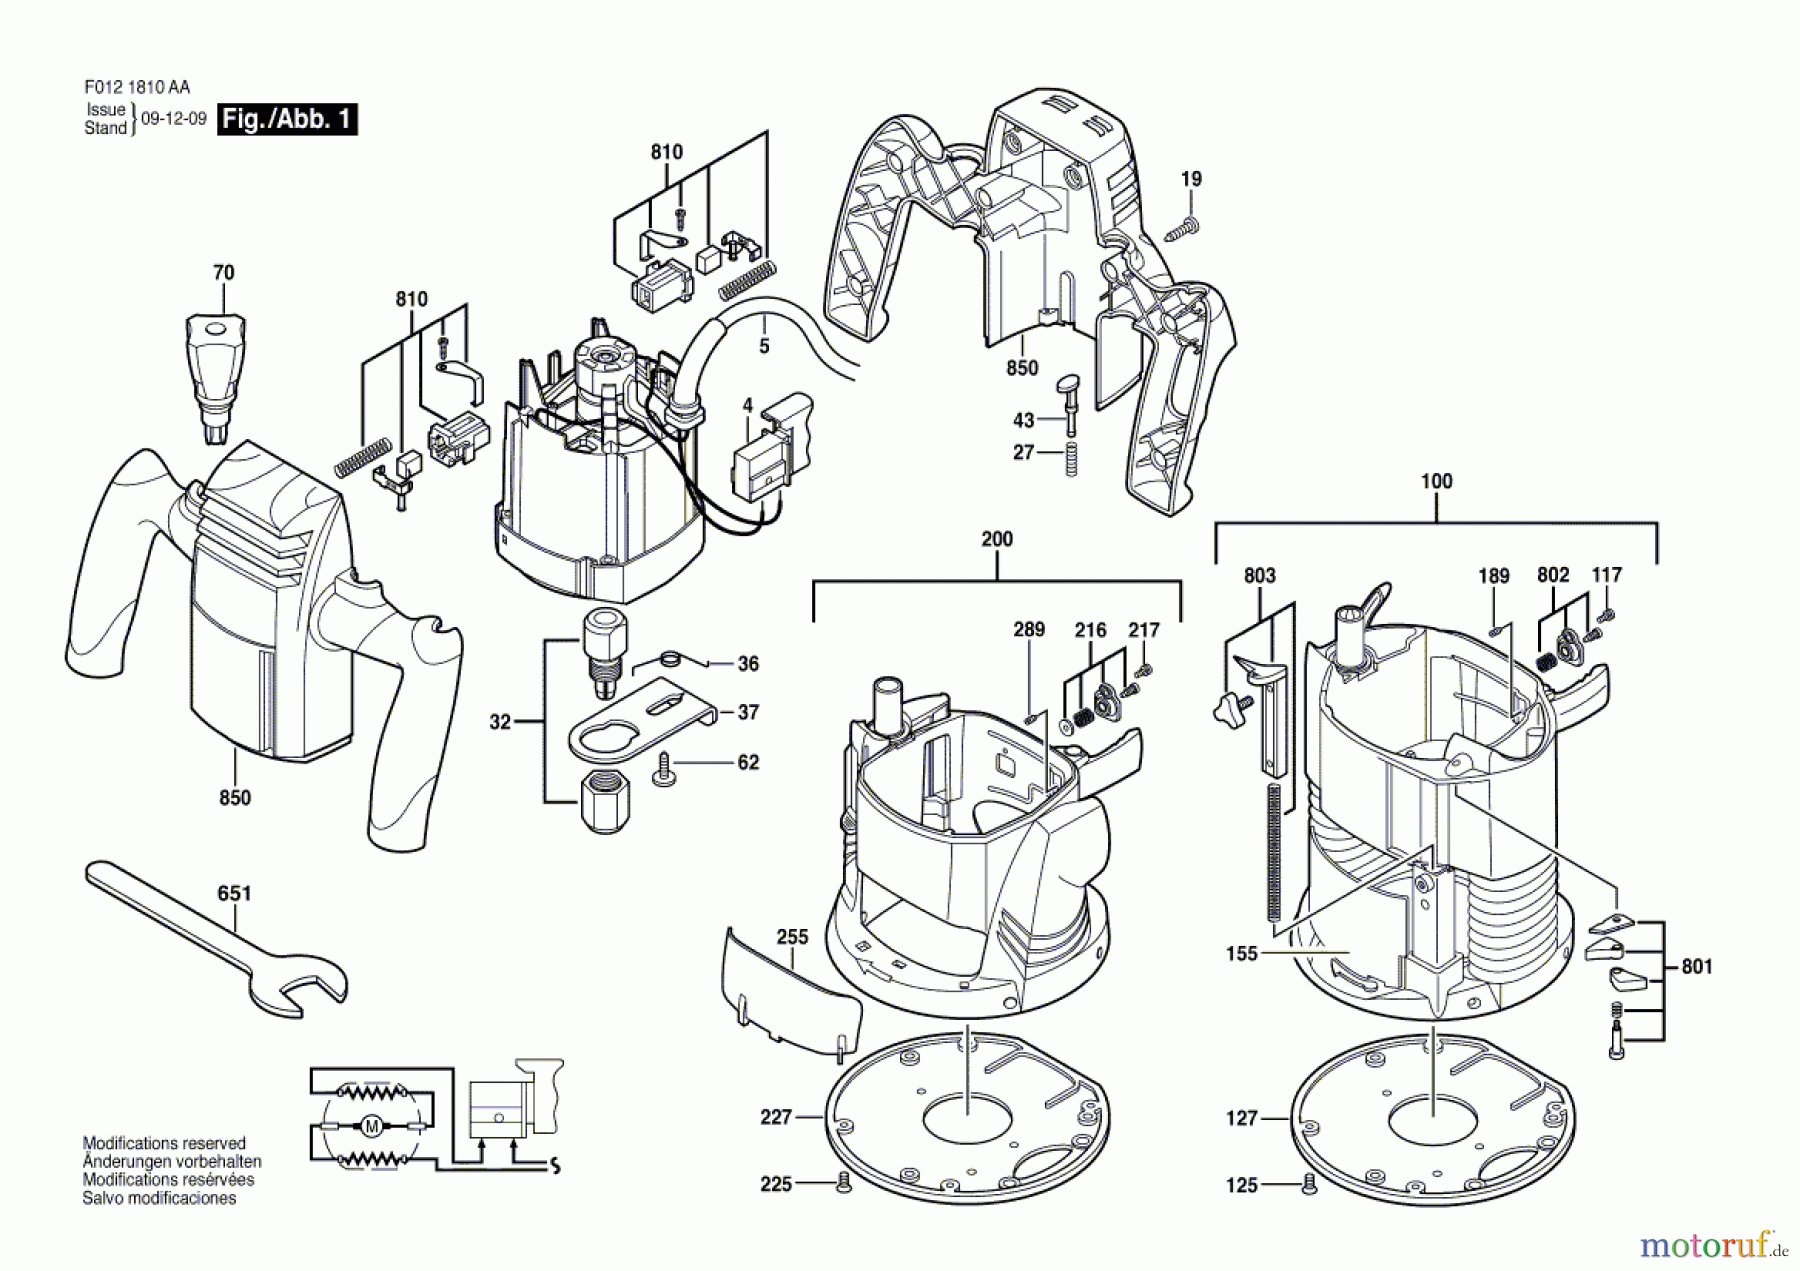  Bosch Werkzeug Motorregeleinheit 1810 Seite 1